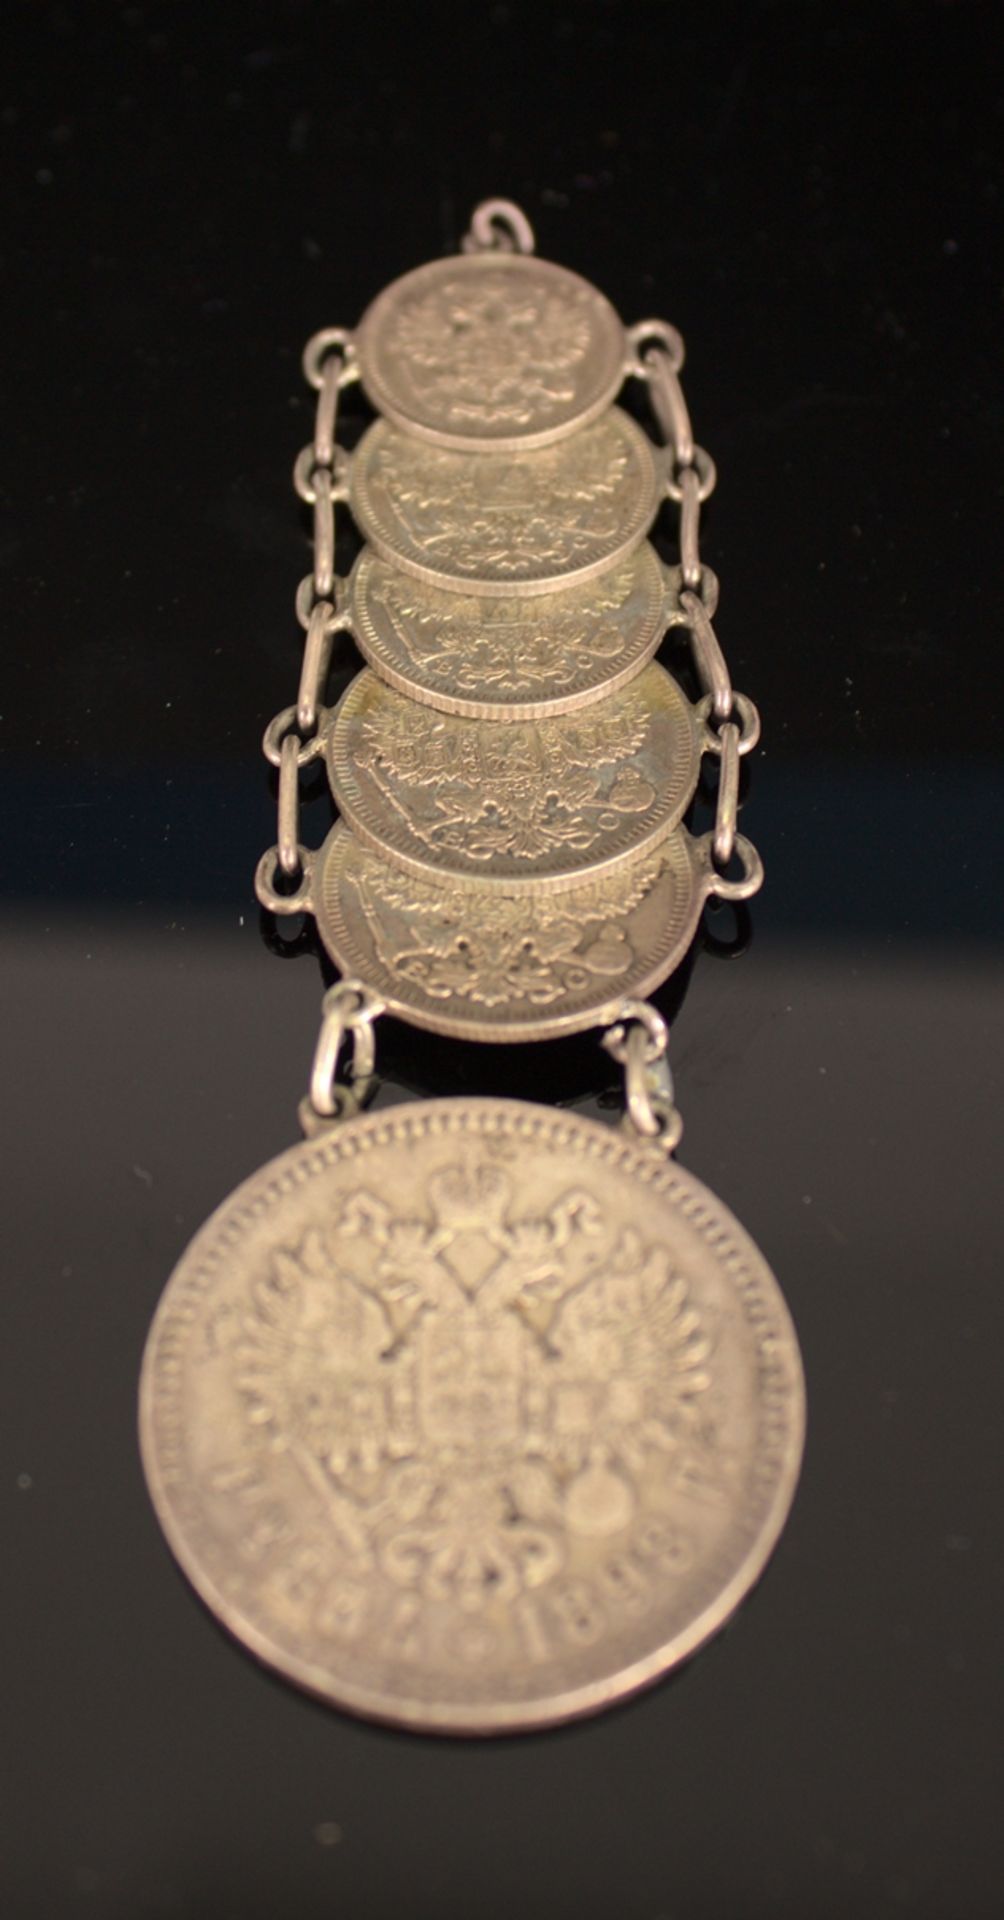 6teilige "russische Silbermünzen - Chatelaine" - Uhrenkette, bestehend aus 6 mi - Image 3 of 7